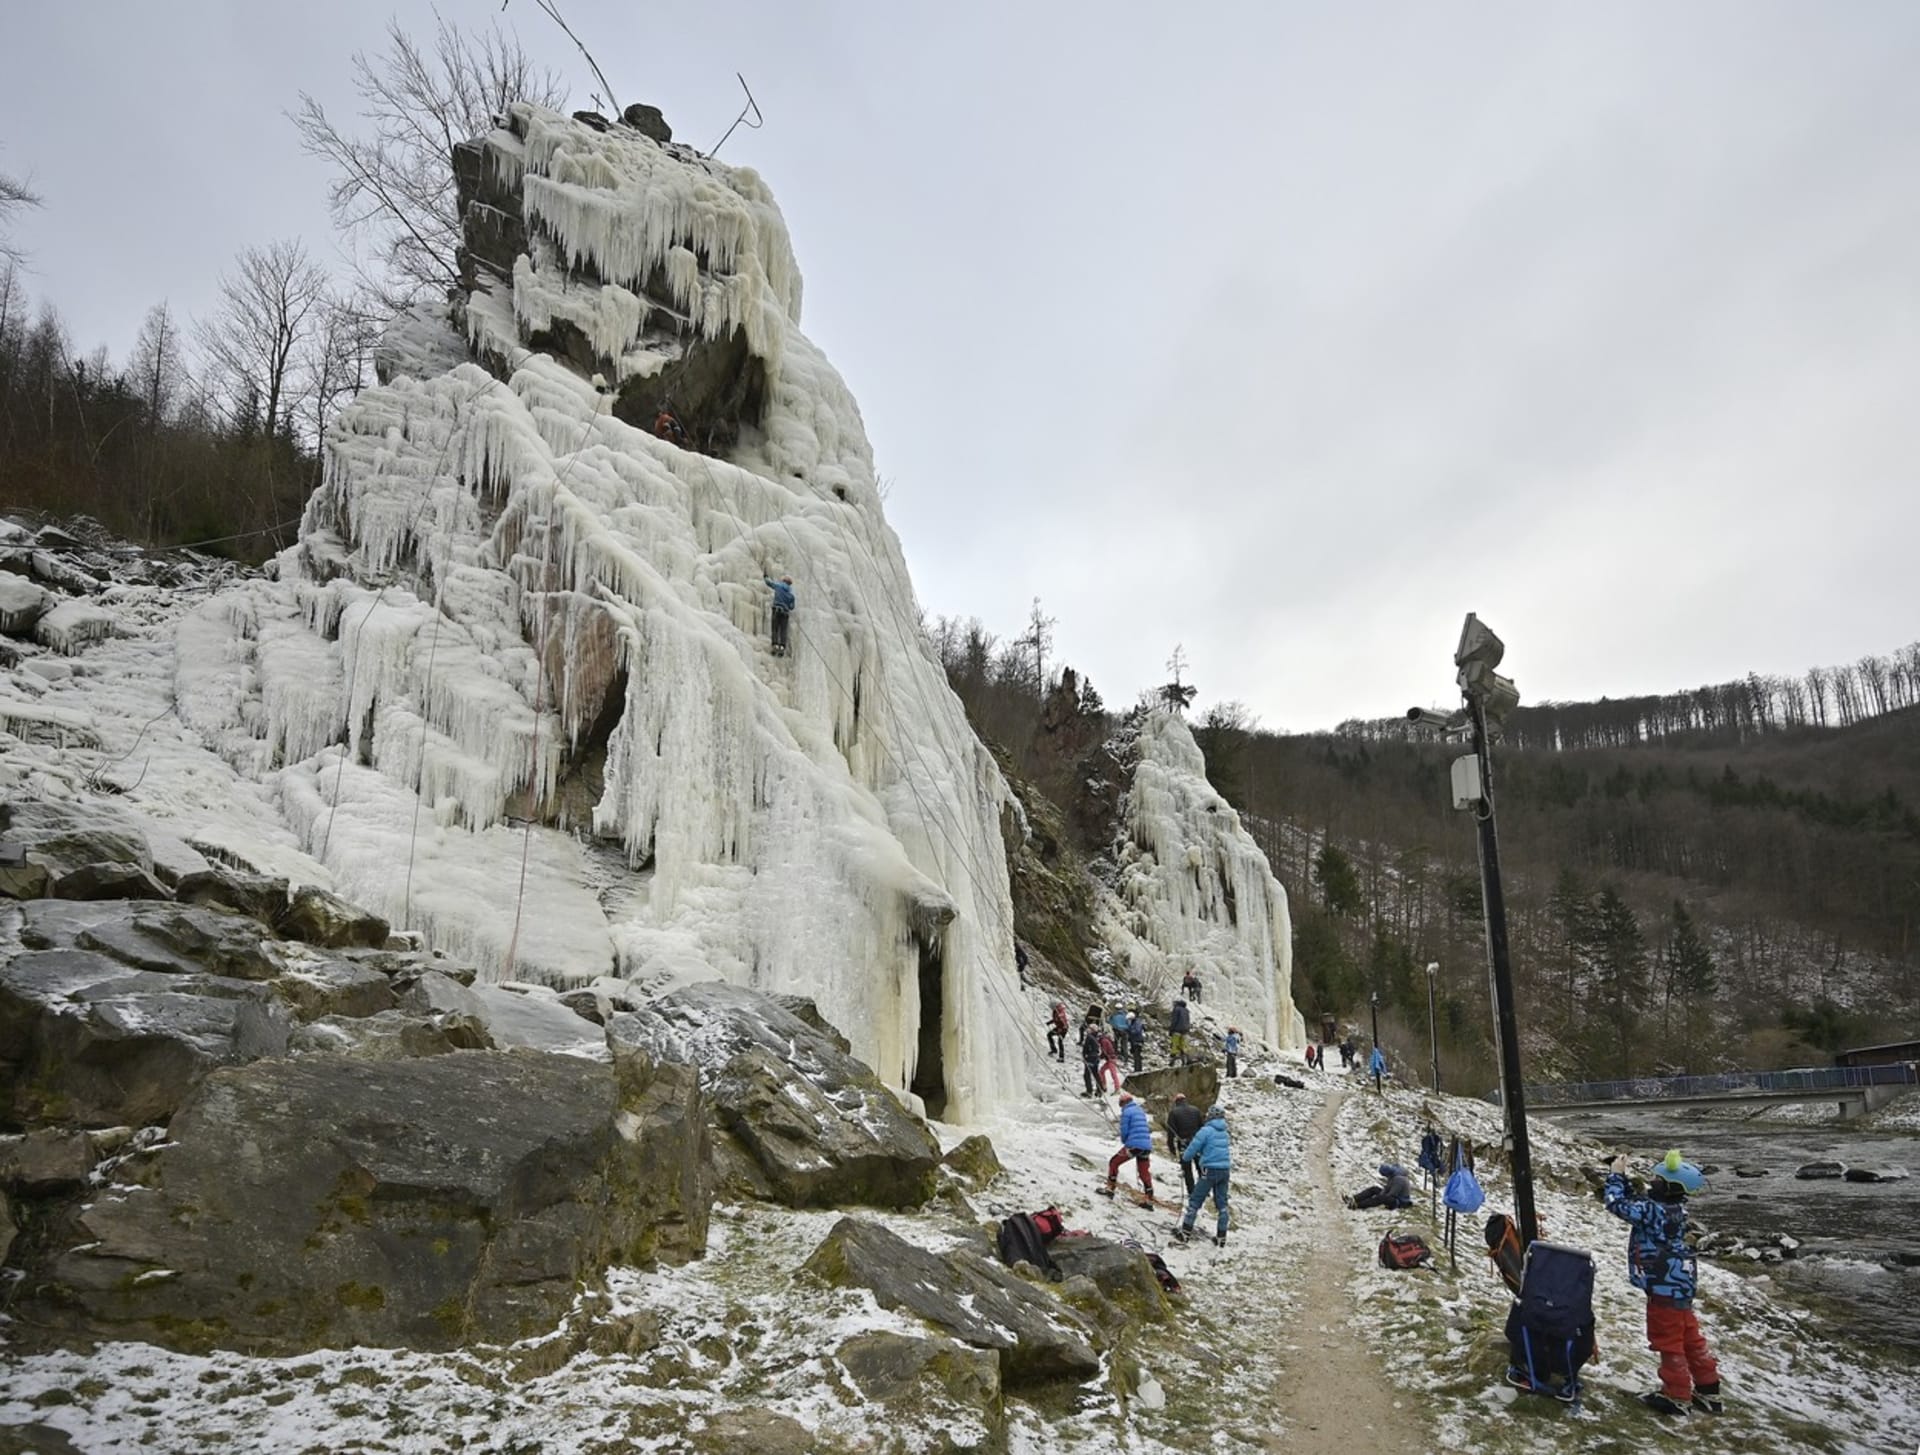 Ledová stěna Vír je nejvyšším ledopádem v České republice a vůbec nejvyšším uměle vytvořeným ledovým útvarem v Evropě.